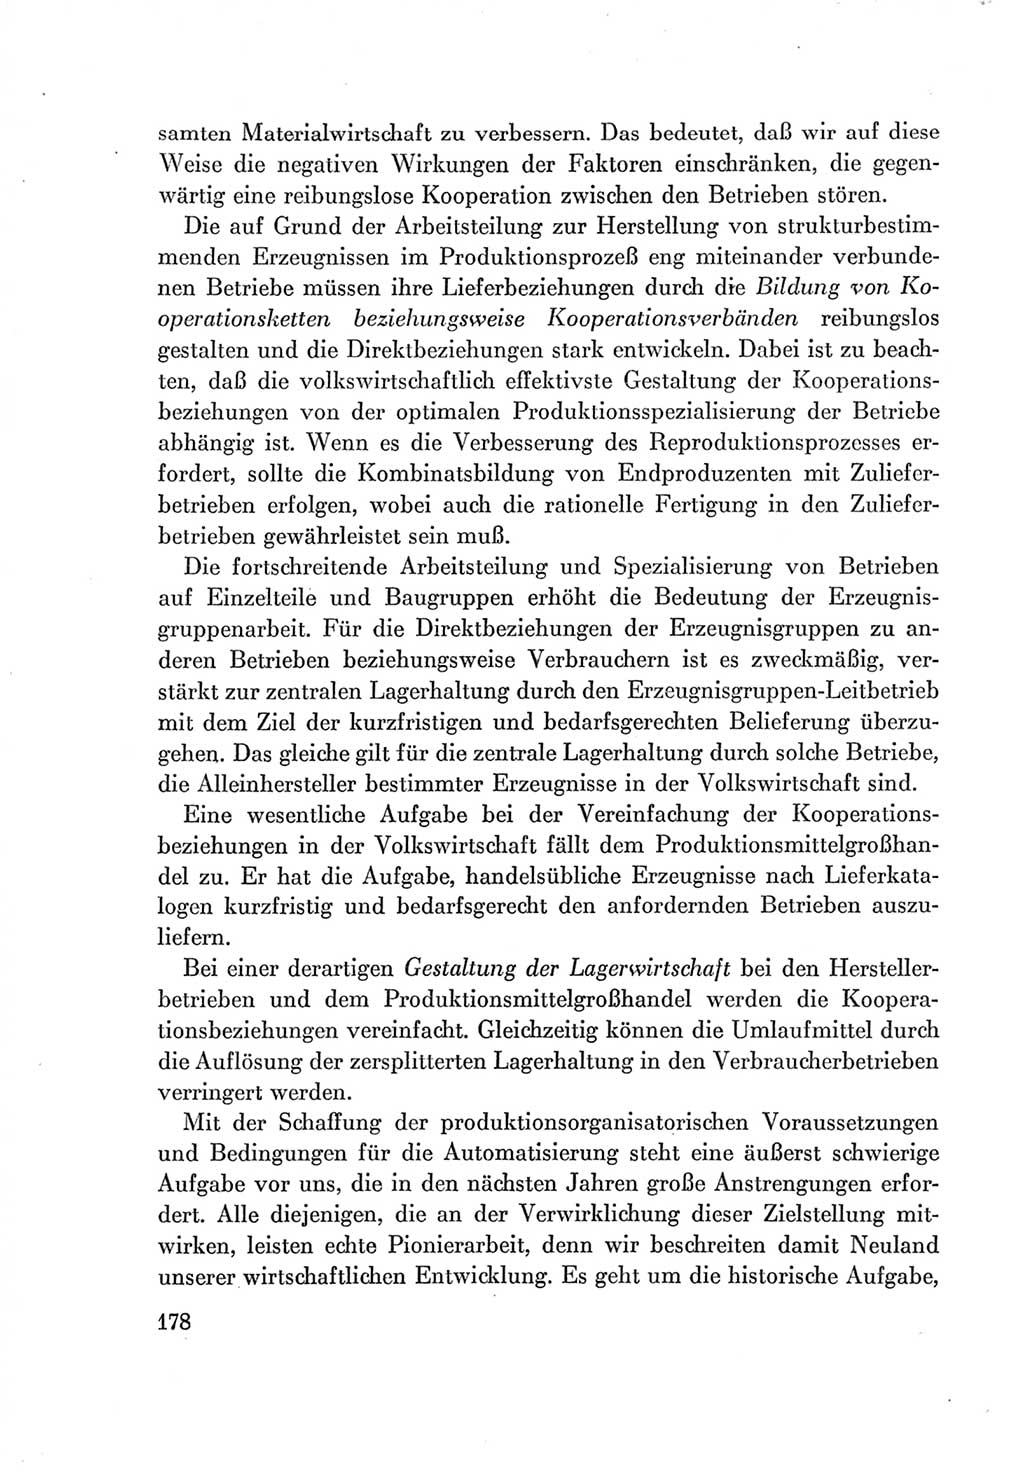 Protokoll der Verhandlungen des Ⅶ. Parteitages der Sozialistischen Einheitspartei Deutschlands (SED) [Deutsche Demokratische Republik (DDR)] 1967, Band Ⅰ, Seite 178 (Prot. Verh. Ⅶ. PT SED DDR 1967, Bd. Ⅰ, S. 178)